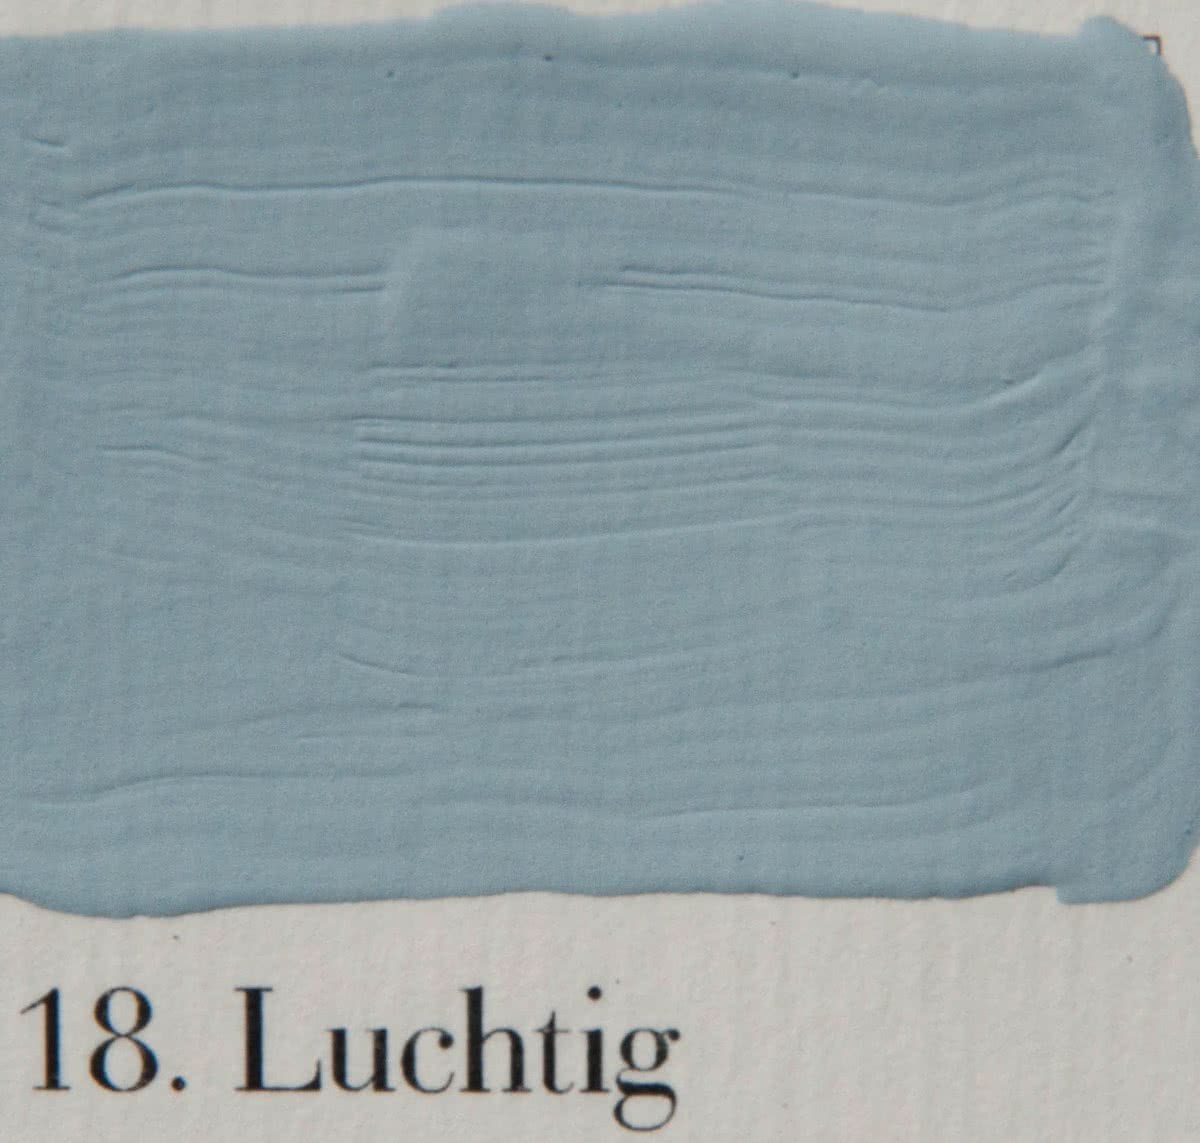 L'Authentique l' Authentique krijtverf, kleur 18 Luchtig, 2.5 lit. Krijtverf